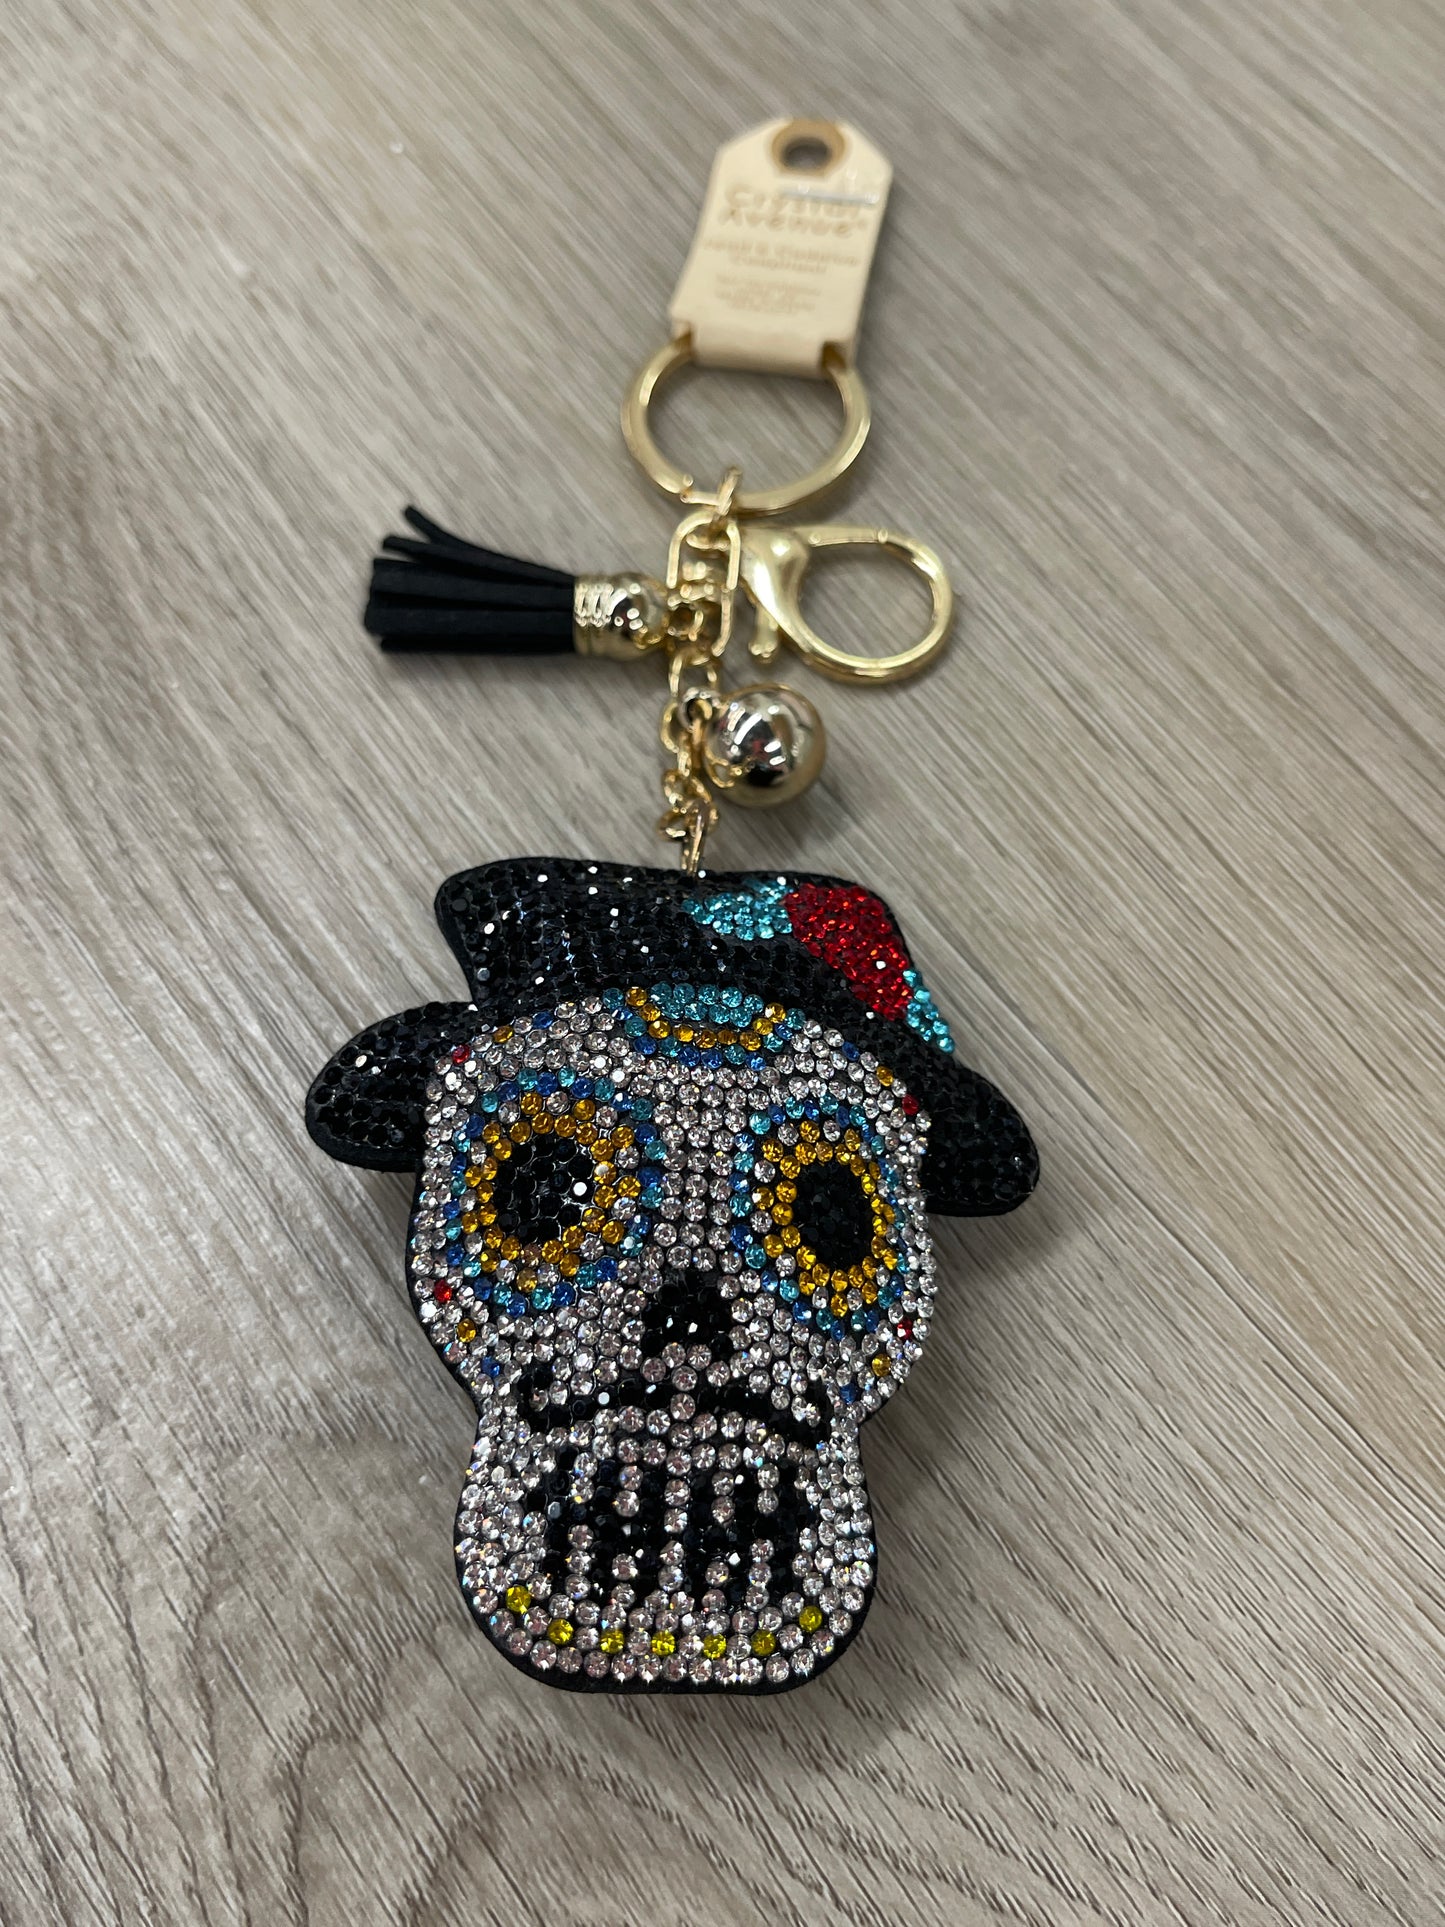 Mr Sugar Skull Crystal Puffy Keychain Purse Charm